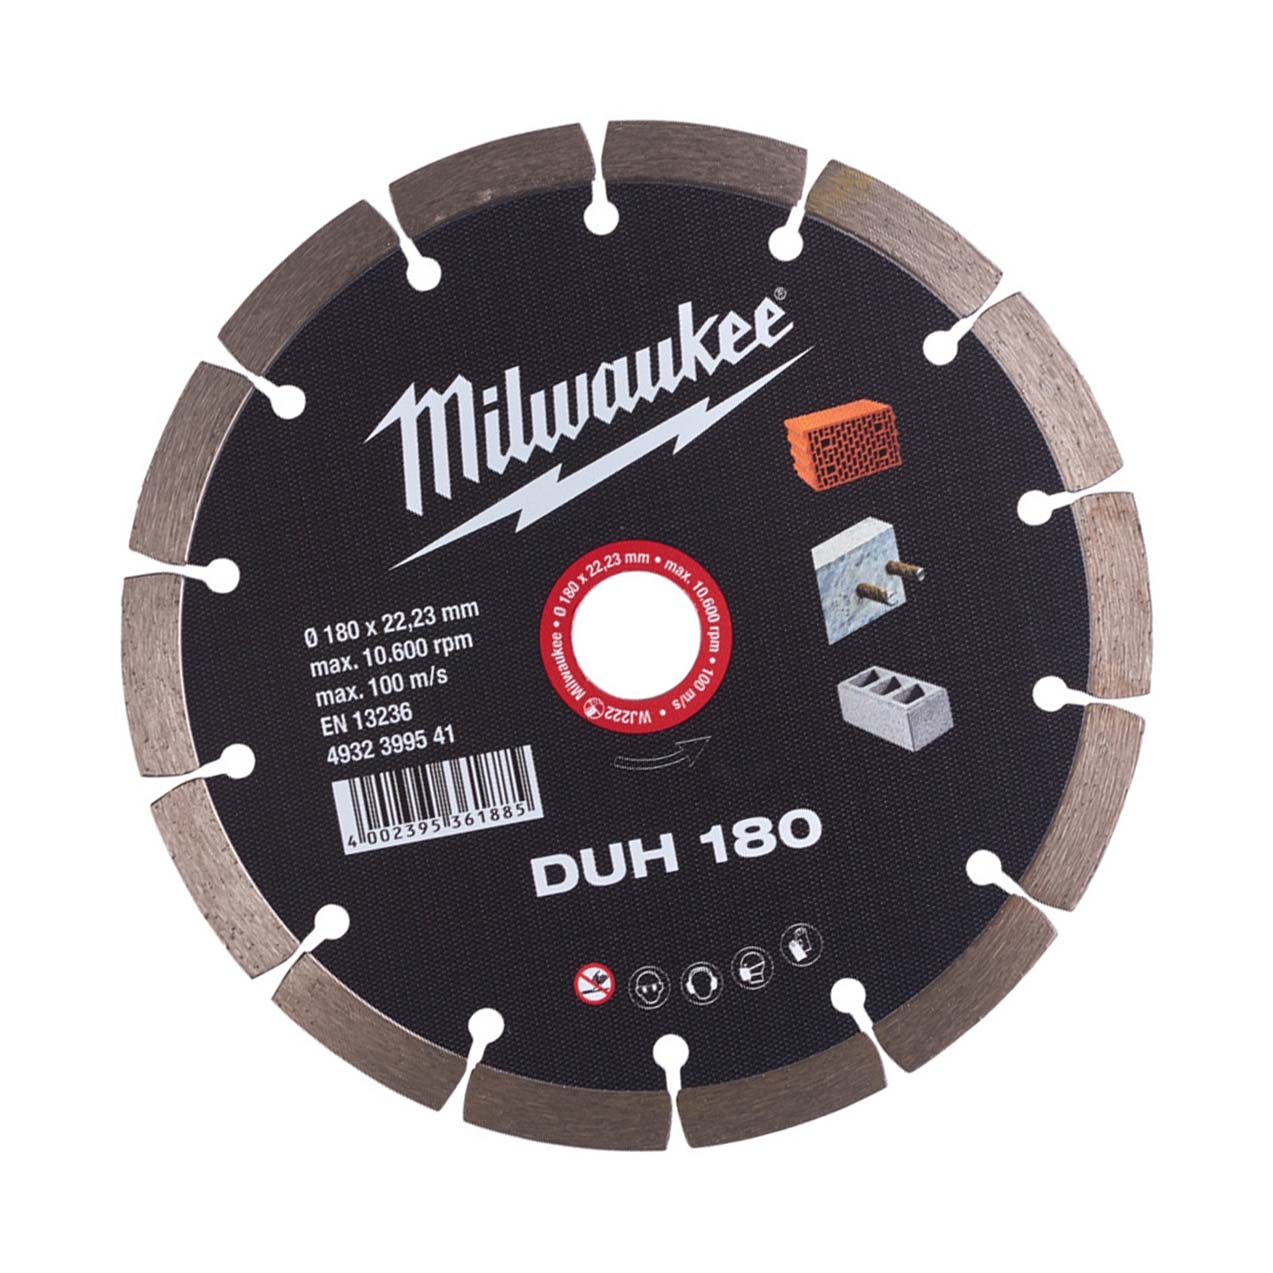 Milwaukee Diamanttrennscheibe DUH 180 mm für harte Materialien - 1 Stk.